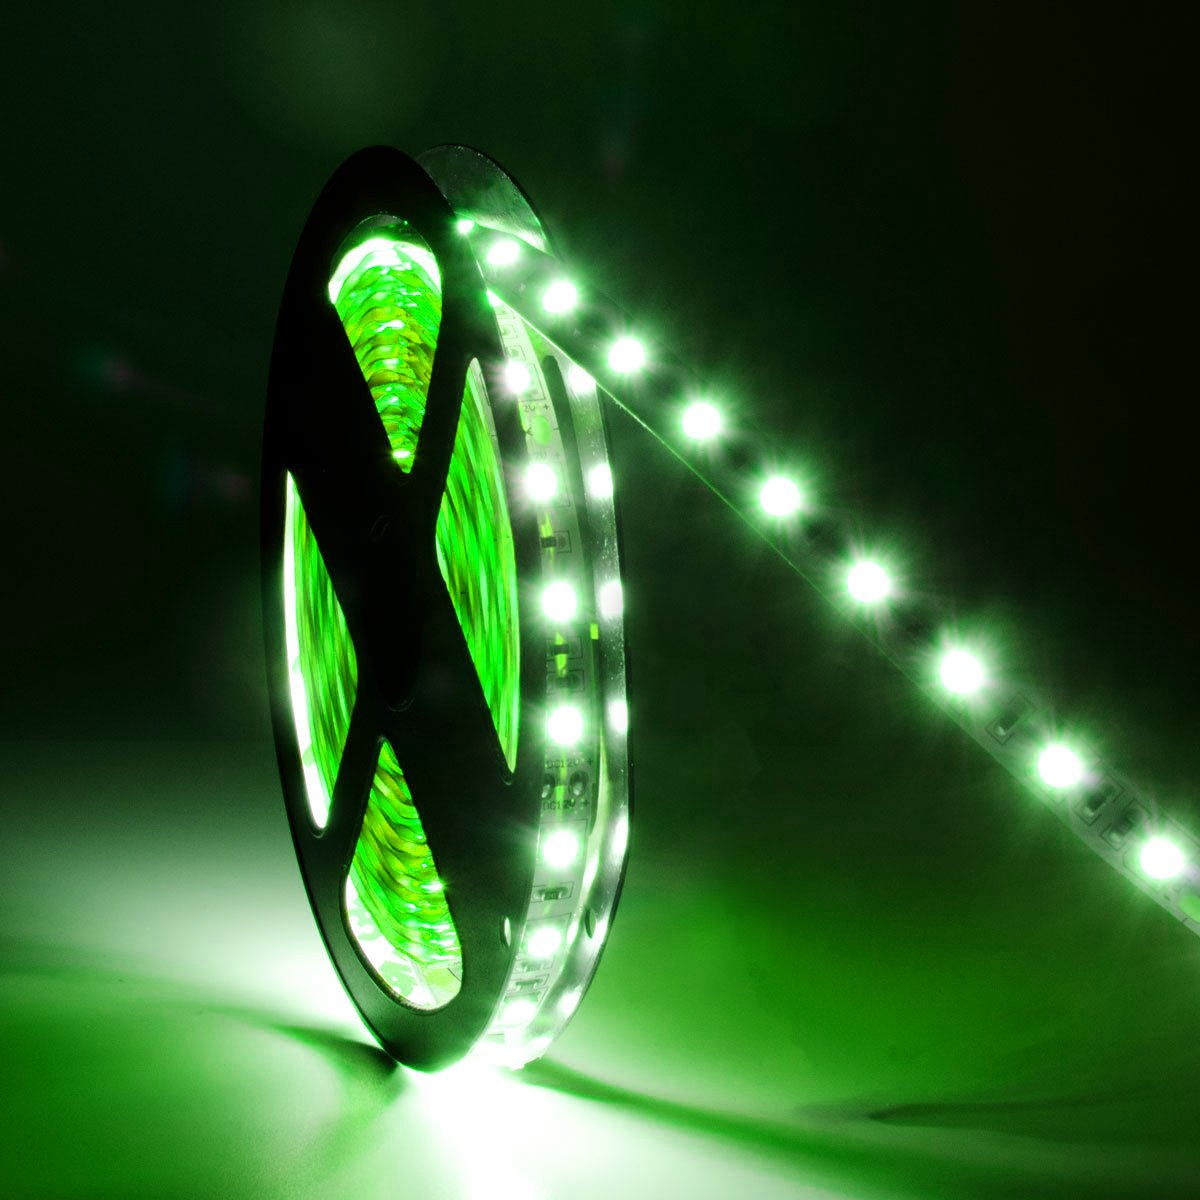 G.W.S LED Wholesale LED Strip Lights IP44 (Splashproof) / Green / Strip Only IP44 5050 5 Meters 60 LEDs/M LED Strip Light